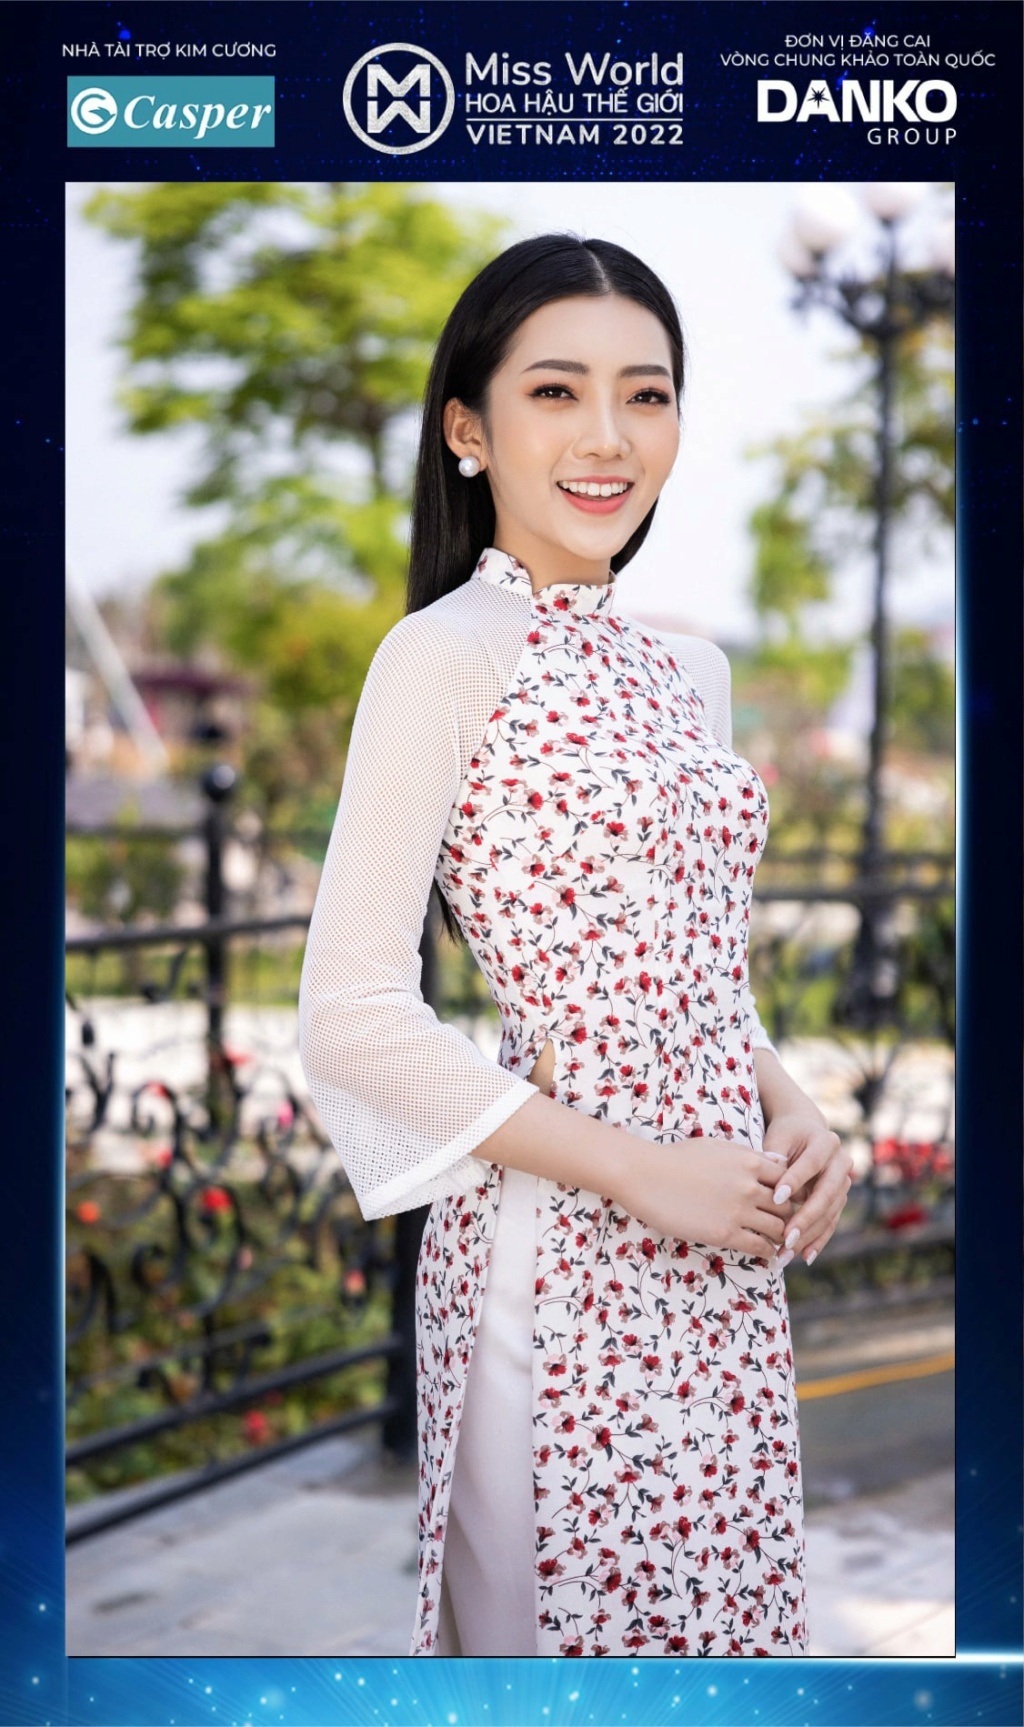 Miss World Vietnam 2022 27912310